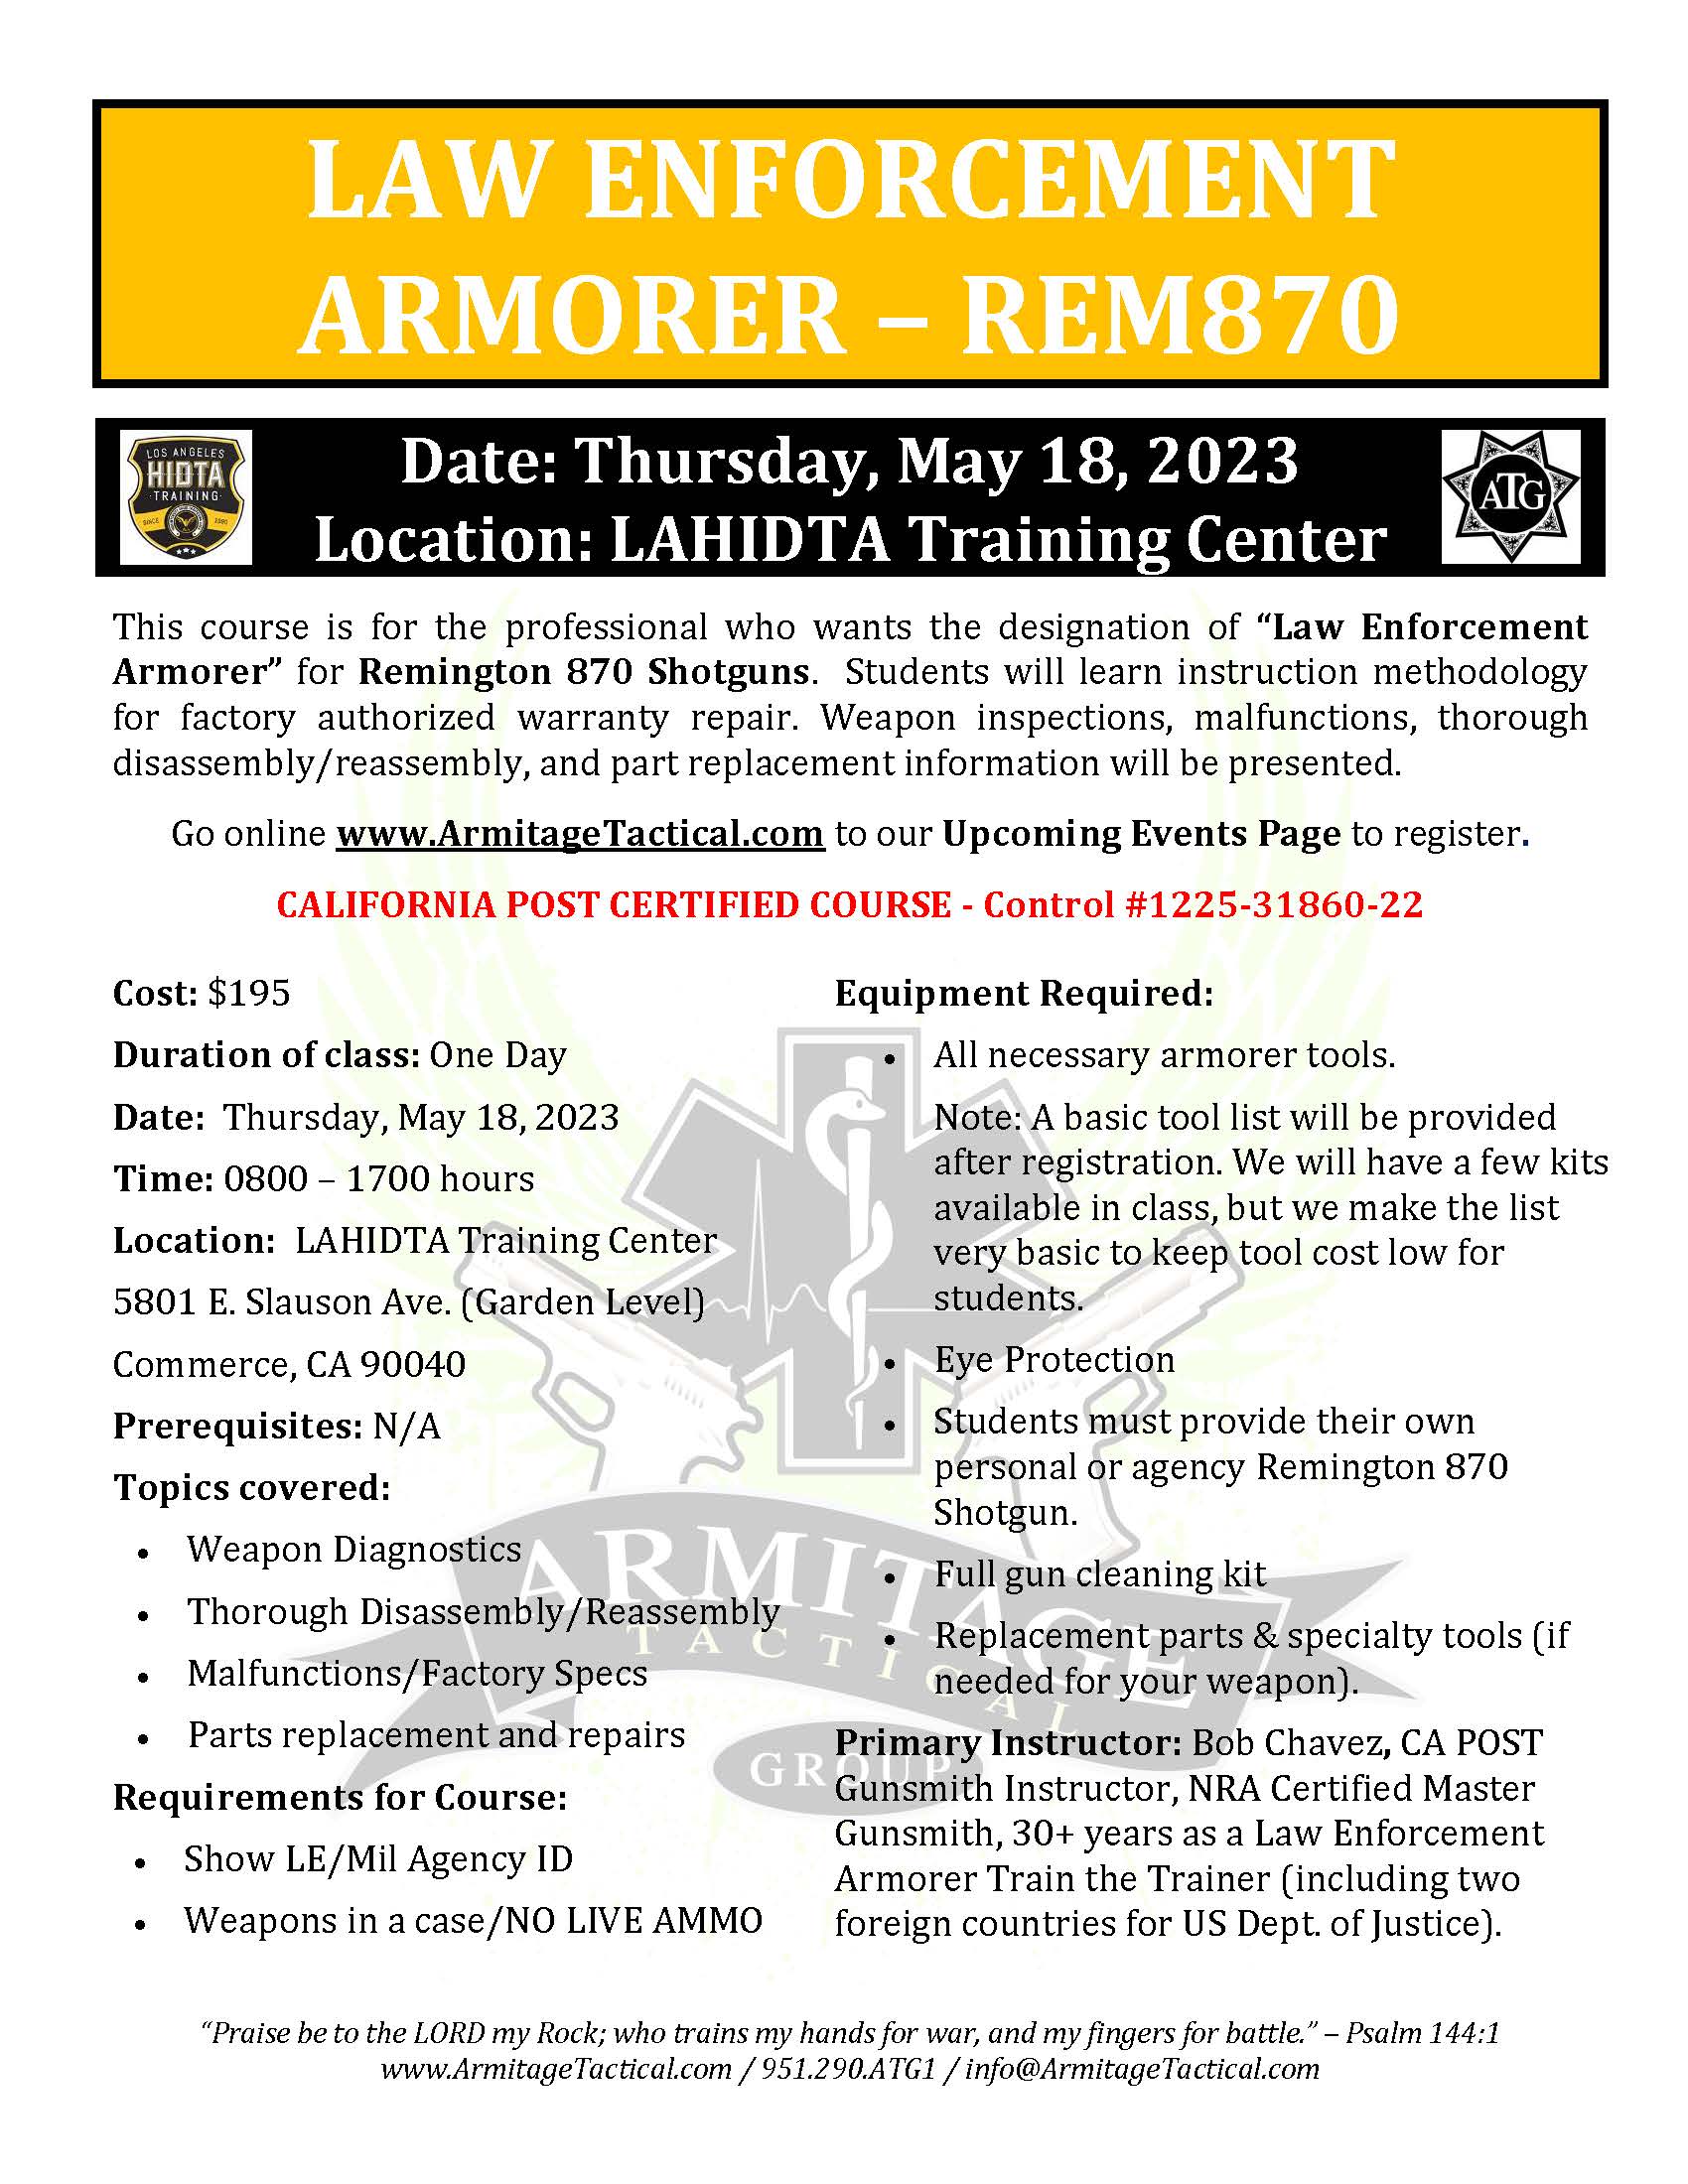 2023/05/18 - Remington 870 LE Armorer's Course - Commerce, CA